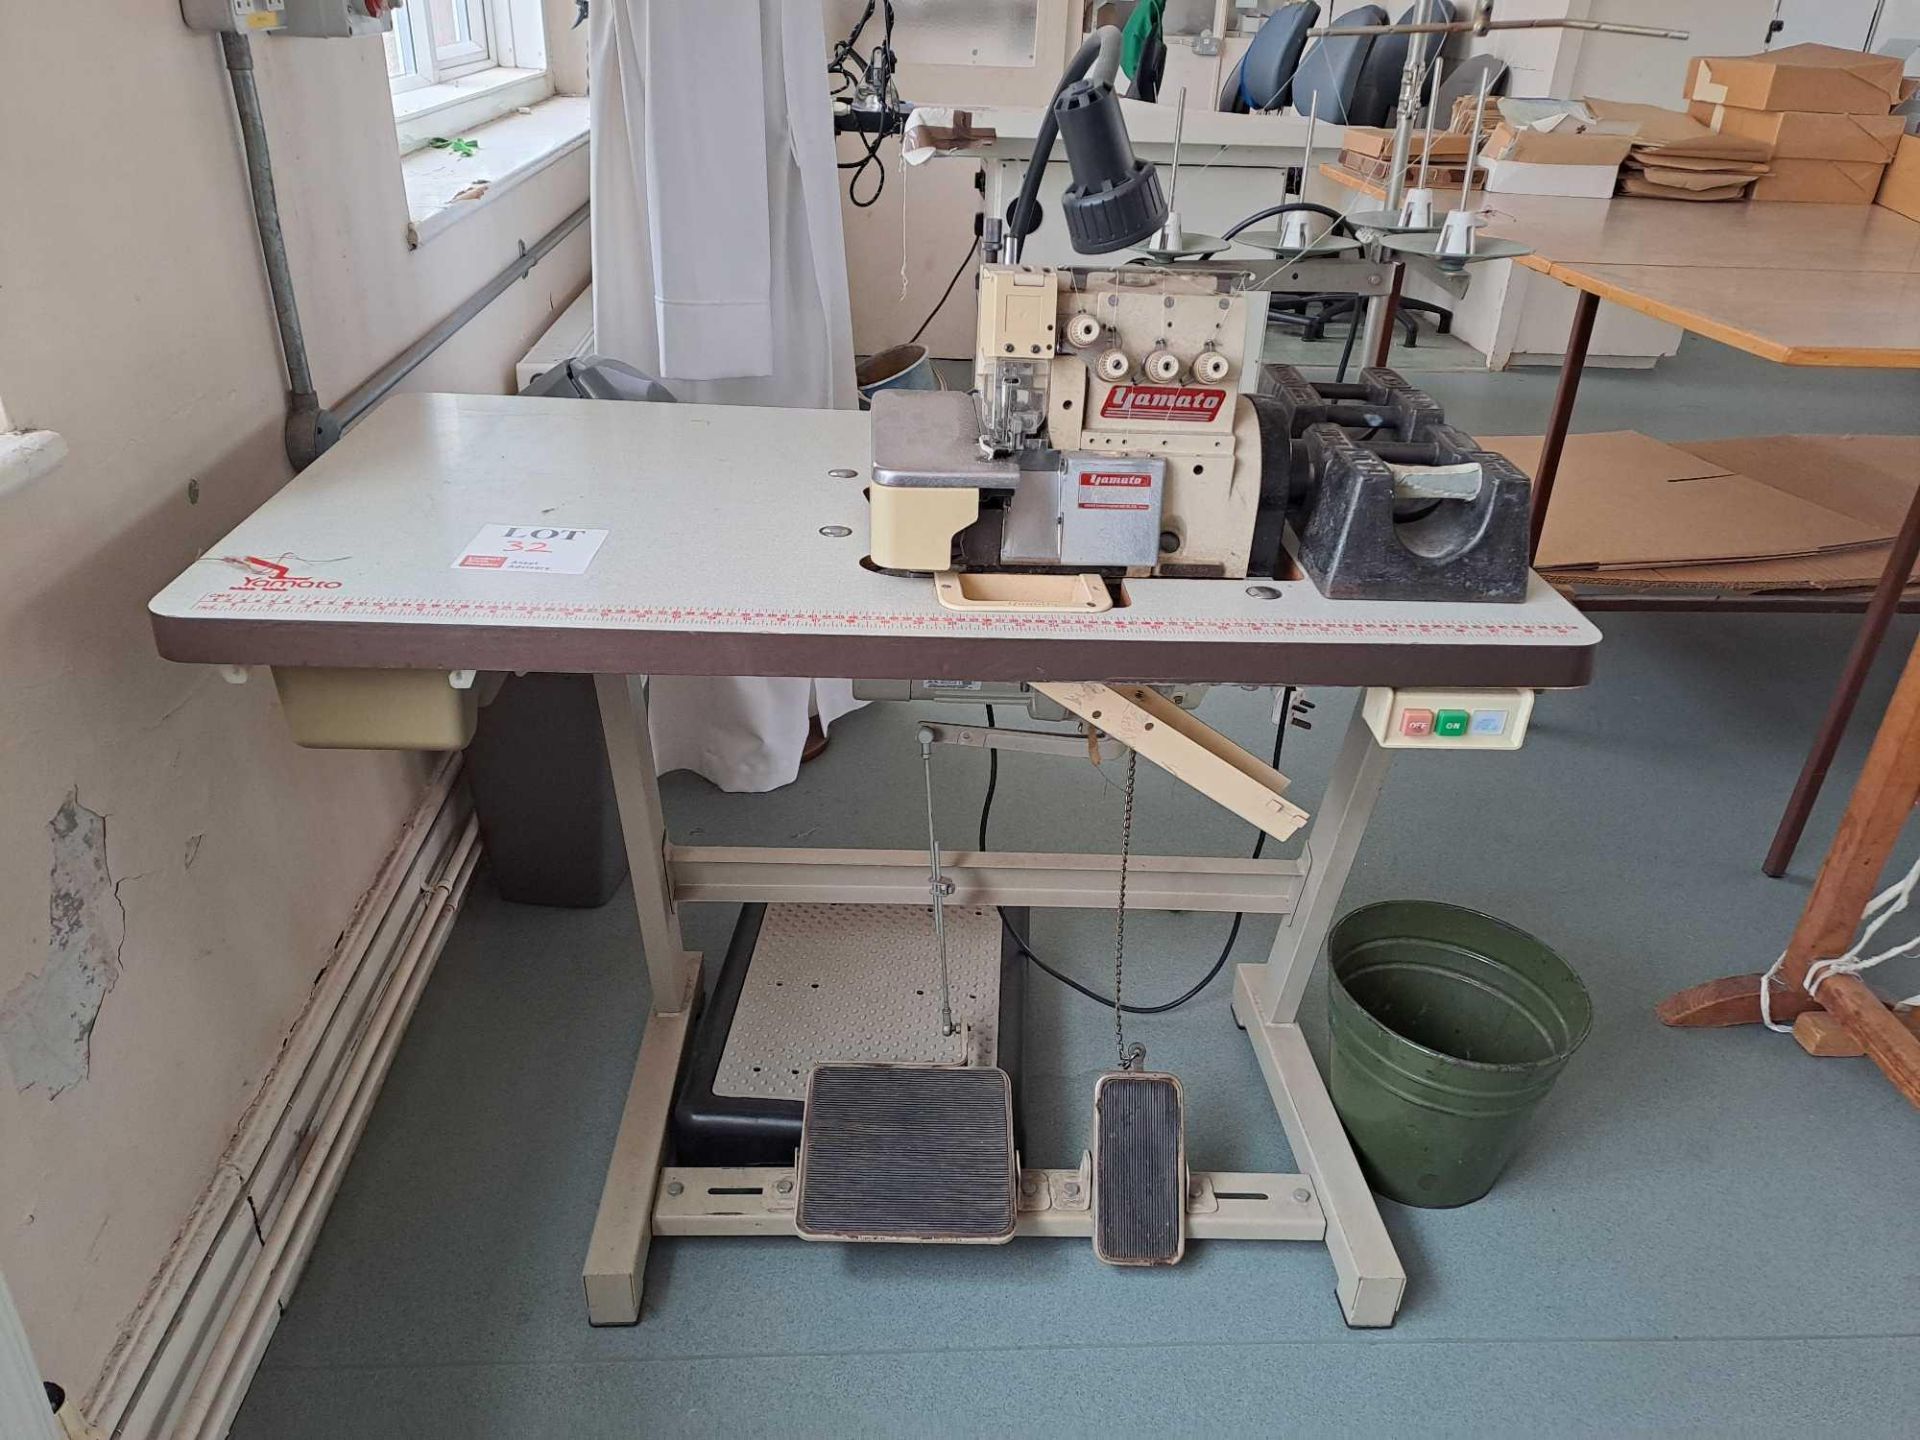 Yamoto Overlocker Sewing Machine